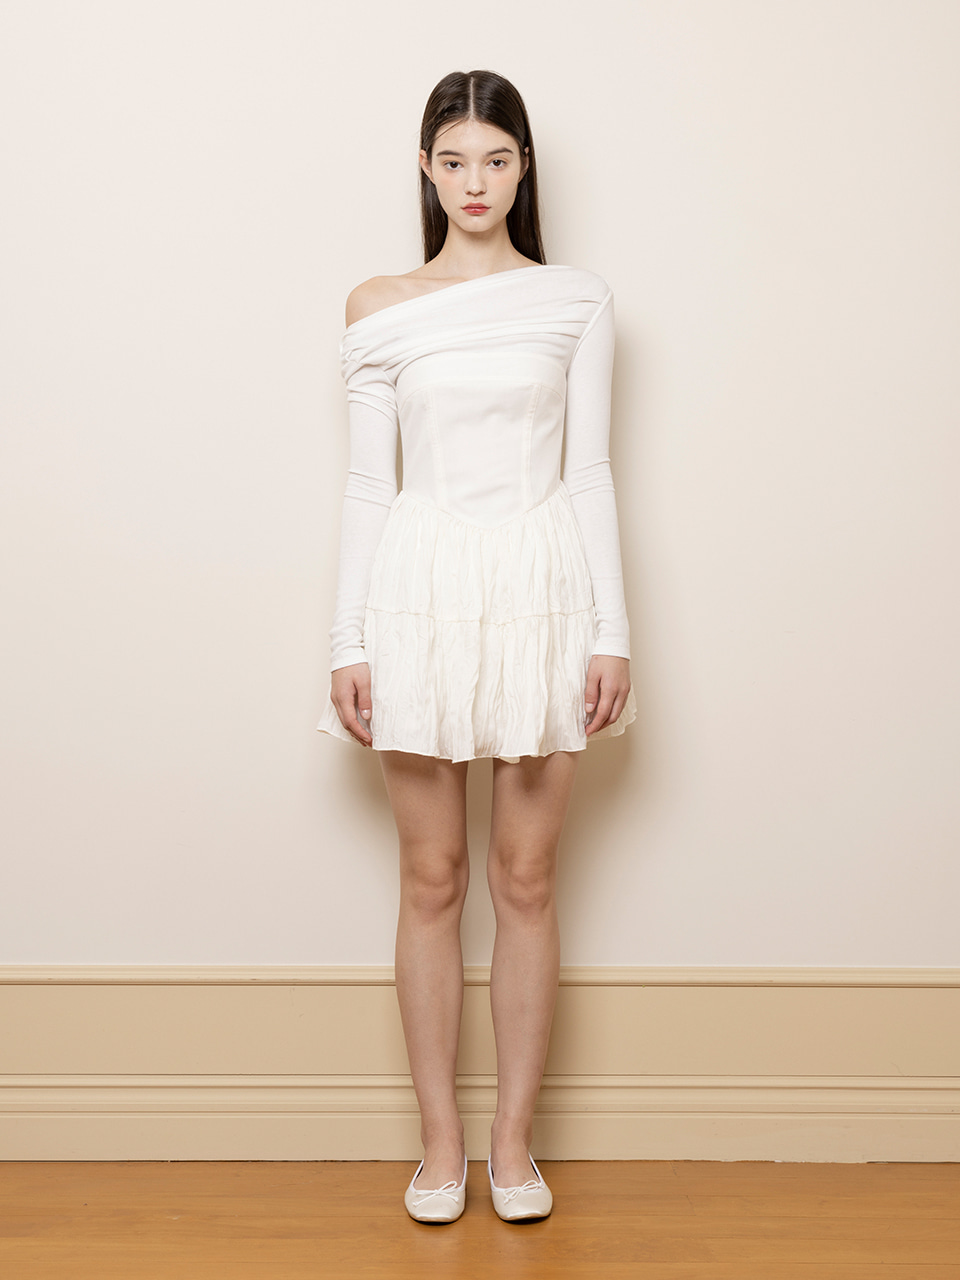 [10월 14일 예약배송] Lily dress (White)